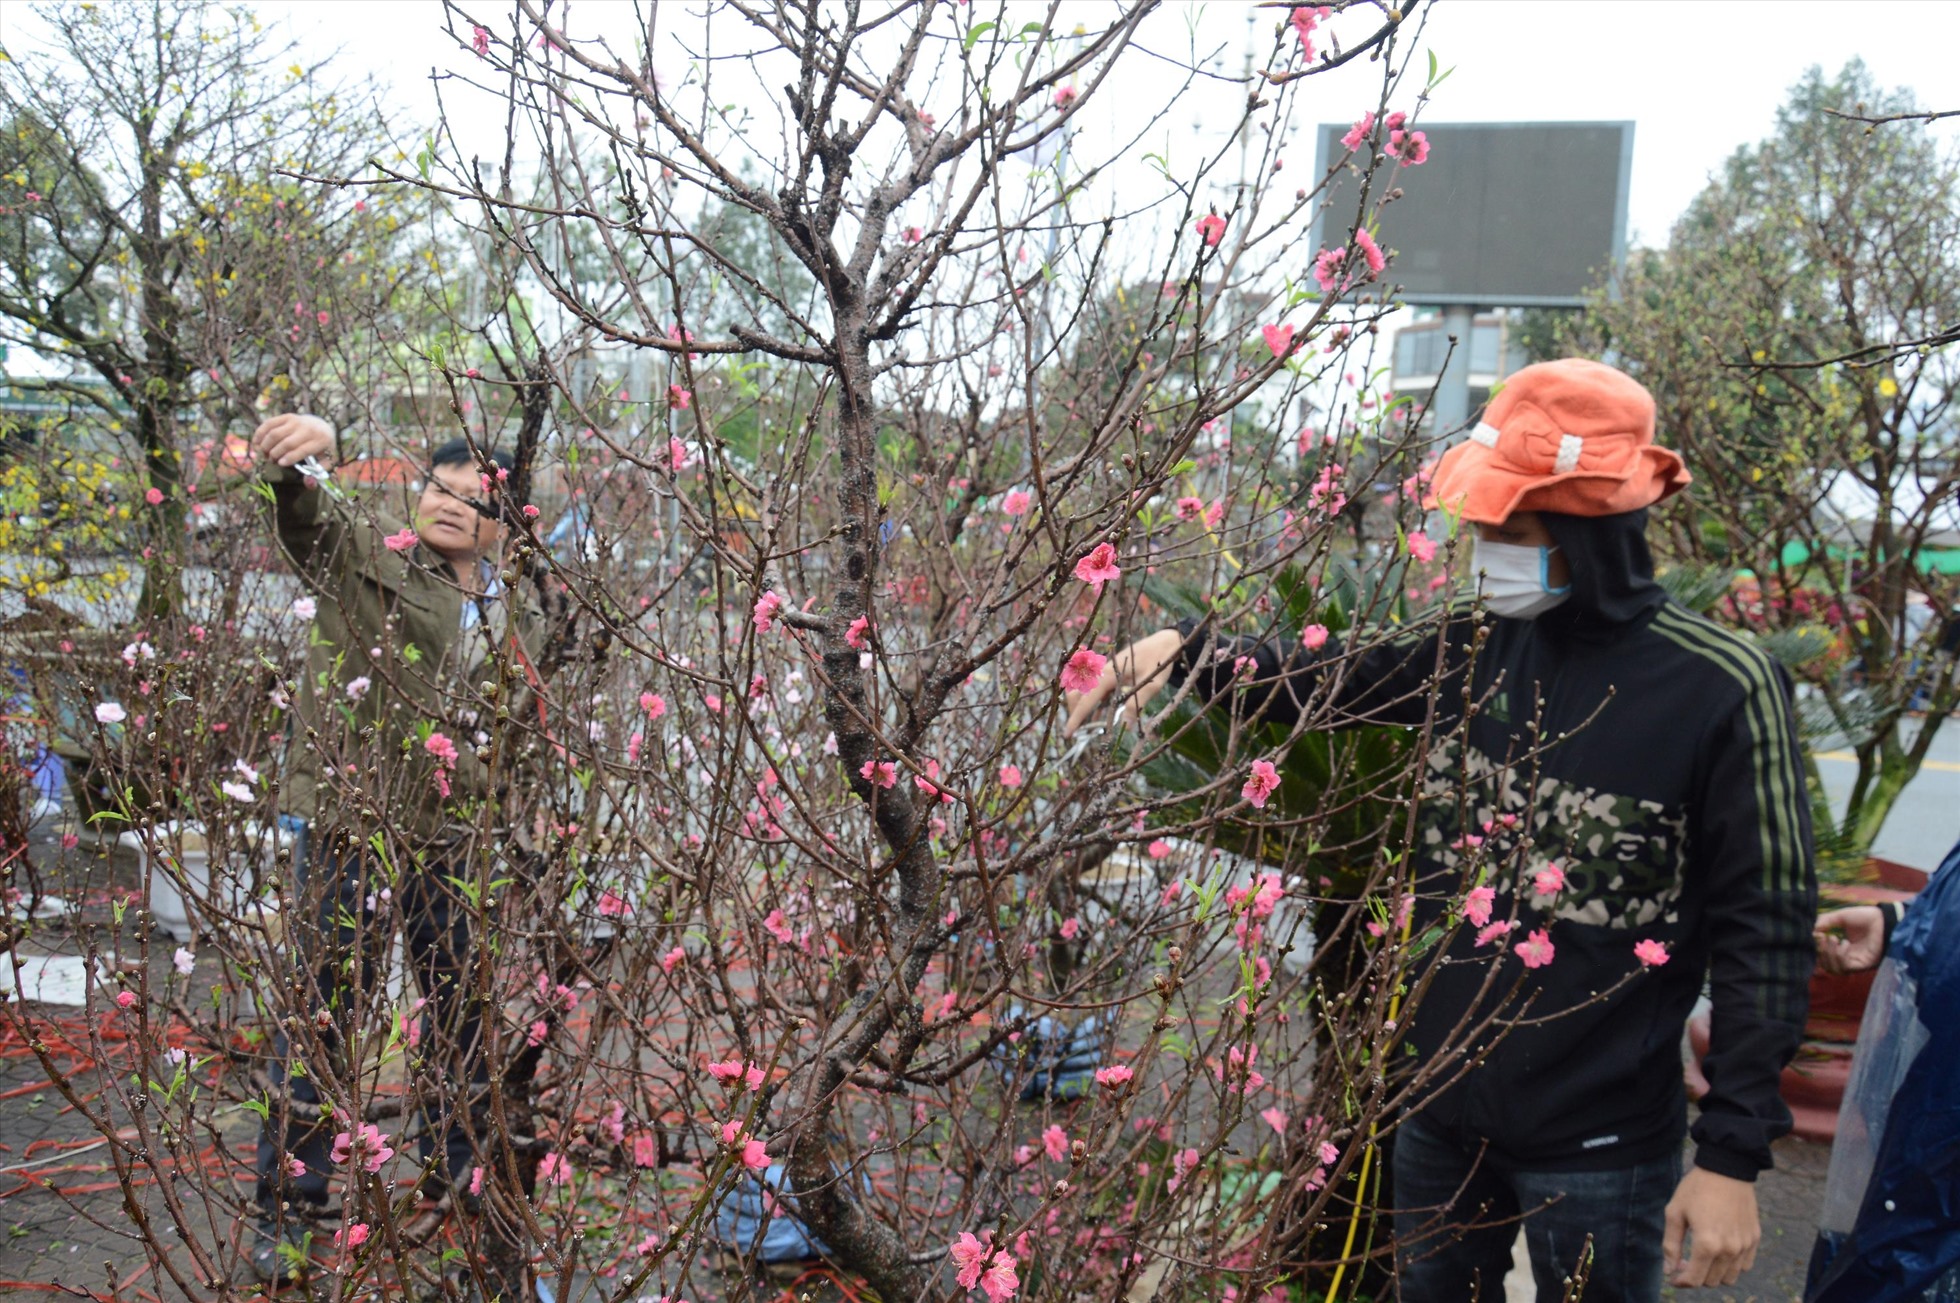 Chợ hoa lớn nhất Quảng Ngãi có rất nhiều loại hoa được vận chuyển về từ khắp nơi trên cả nước, tuy nhiên do gặp tiết trời mưa lạnh nên hoa cũng không còn đẹp như khi còn ở vườn. Ảnh: Ngọc Viên